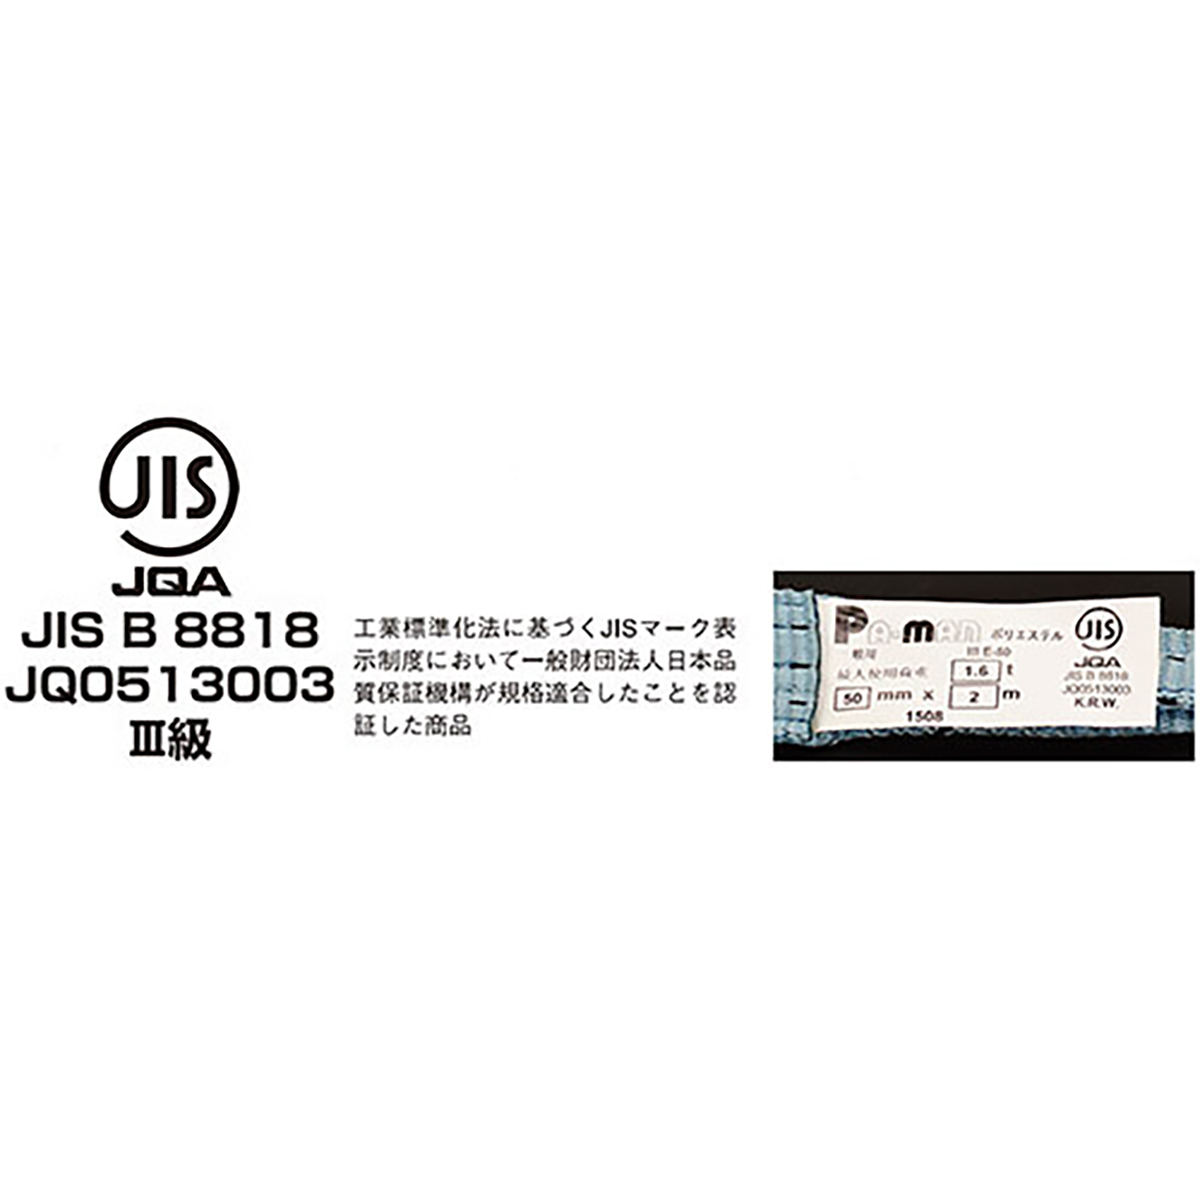 ポリベルトスリング JIS III級 ソフト面付 巾50mm 10m 1本